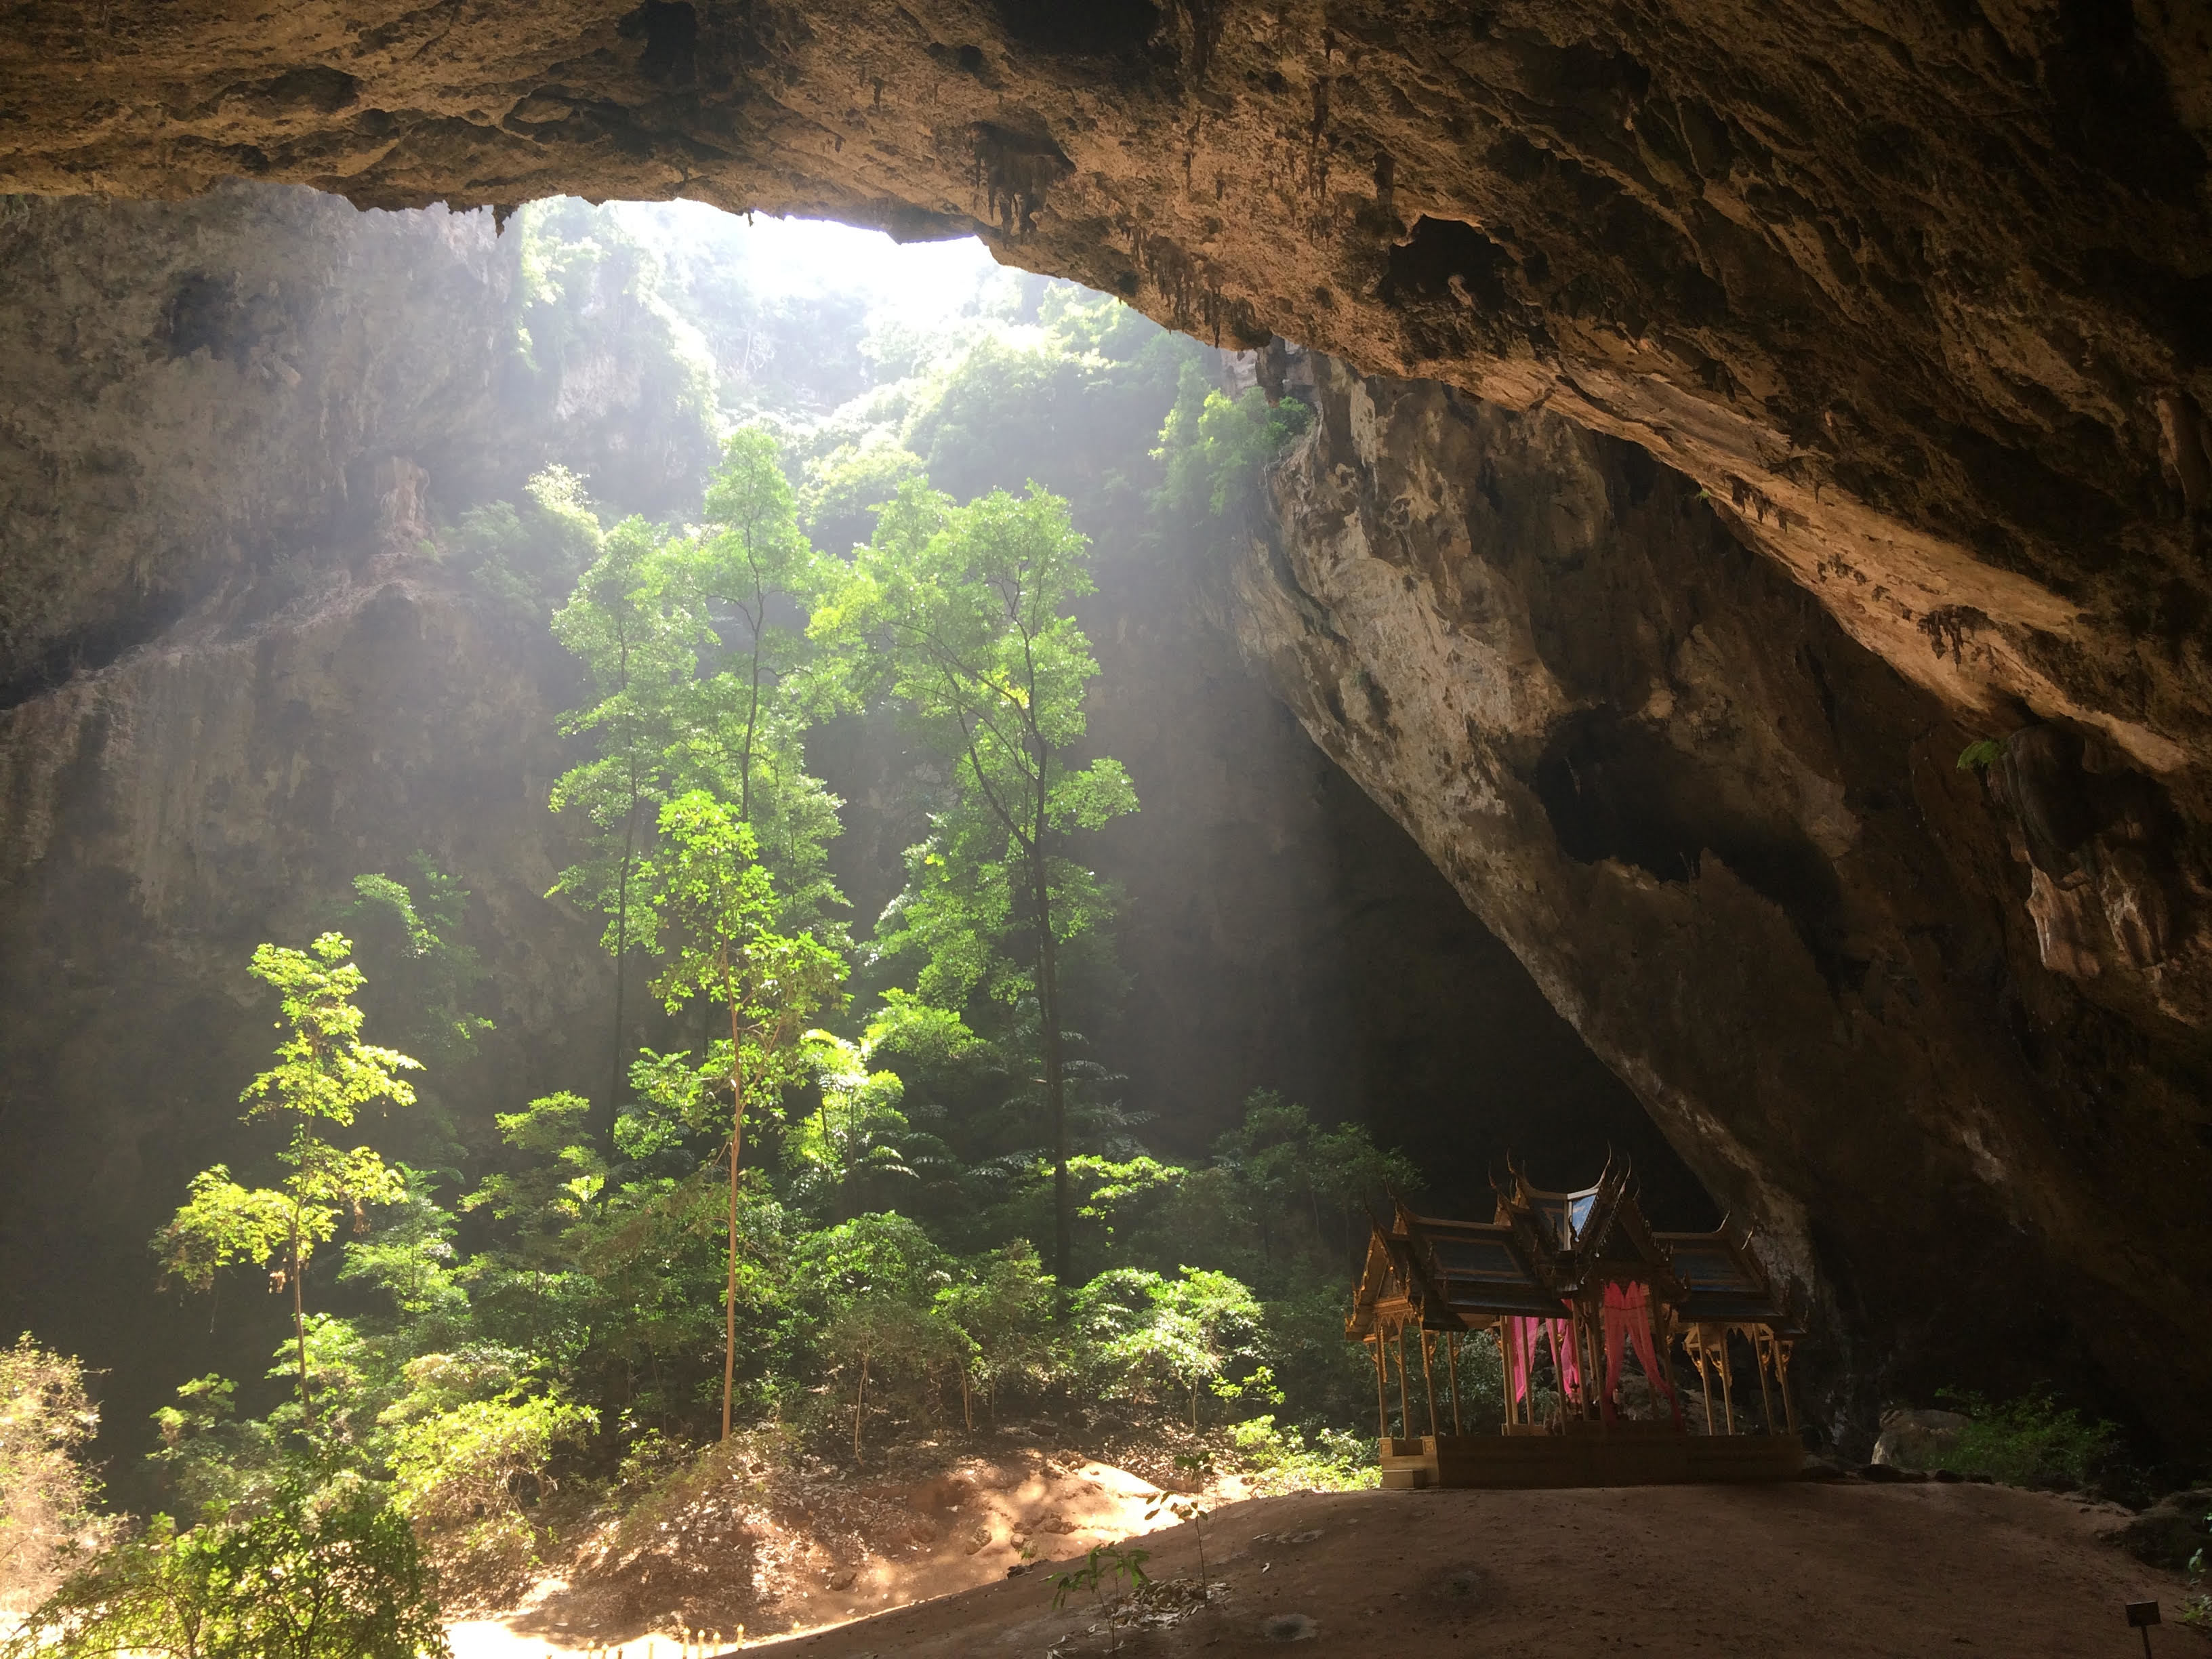 Phraya Nakhon Cave at Khao Sam Roi Yot National Park